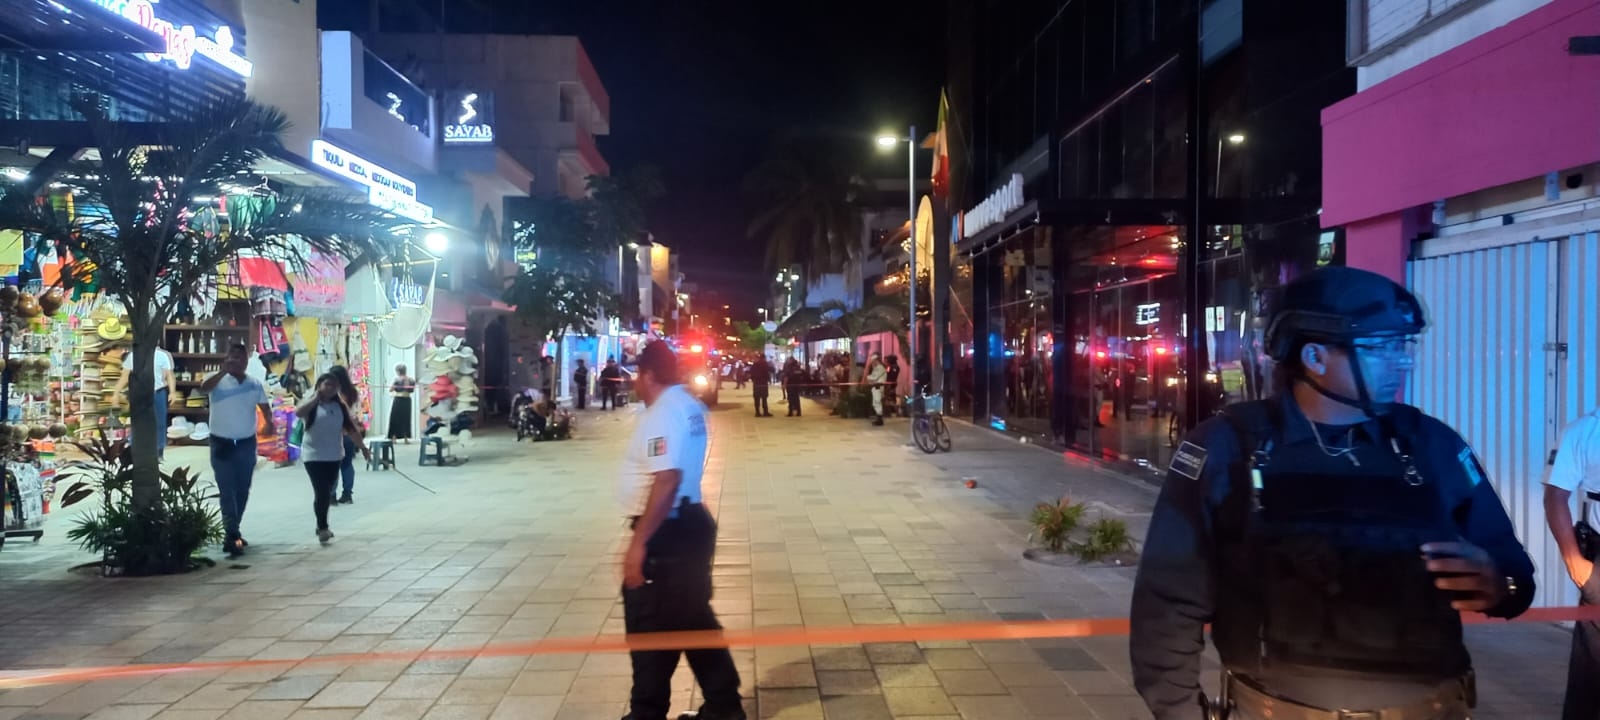 La balacera en el Bar The Roof, localizado en la Quinta Avenida de Playa del Carmen terminó con una persona muerta y varios heridos, entre ellos un turista alemán